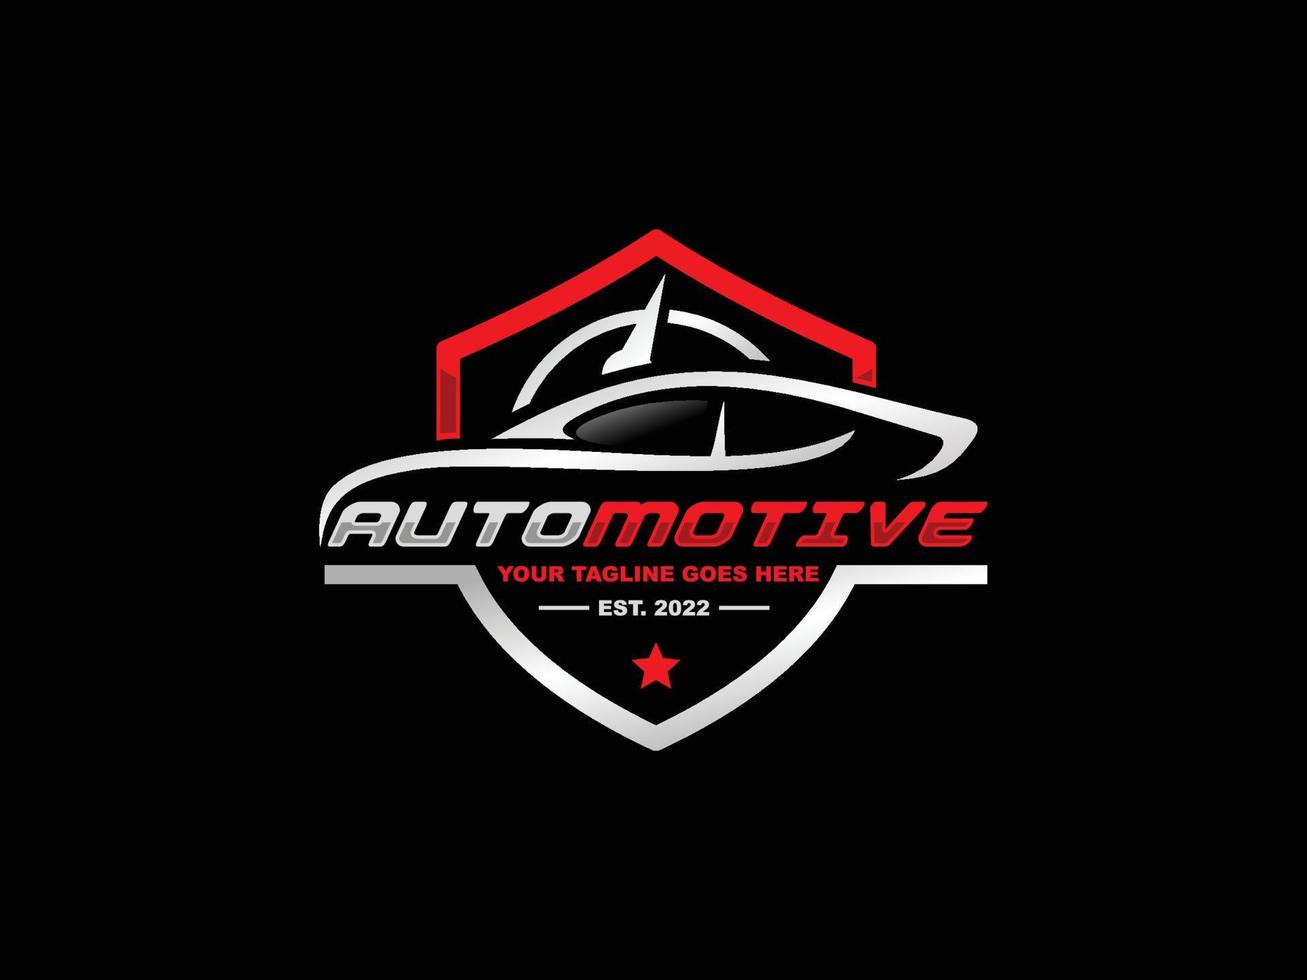 Automotive logo design vector illustration. Car logo vector